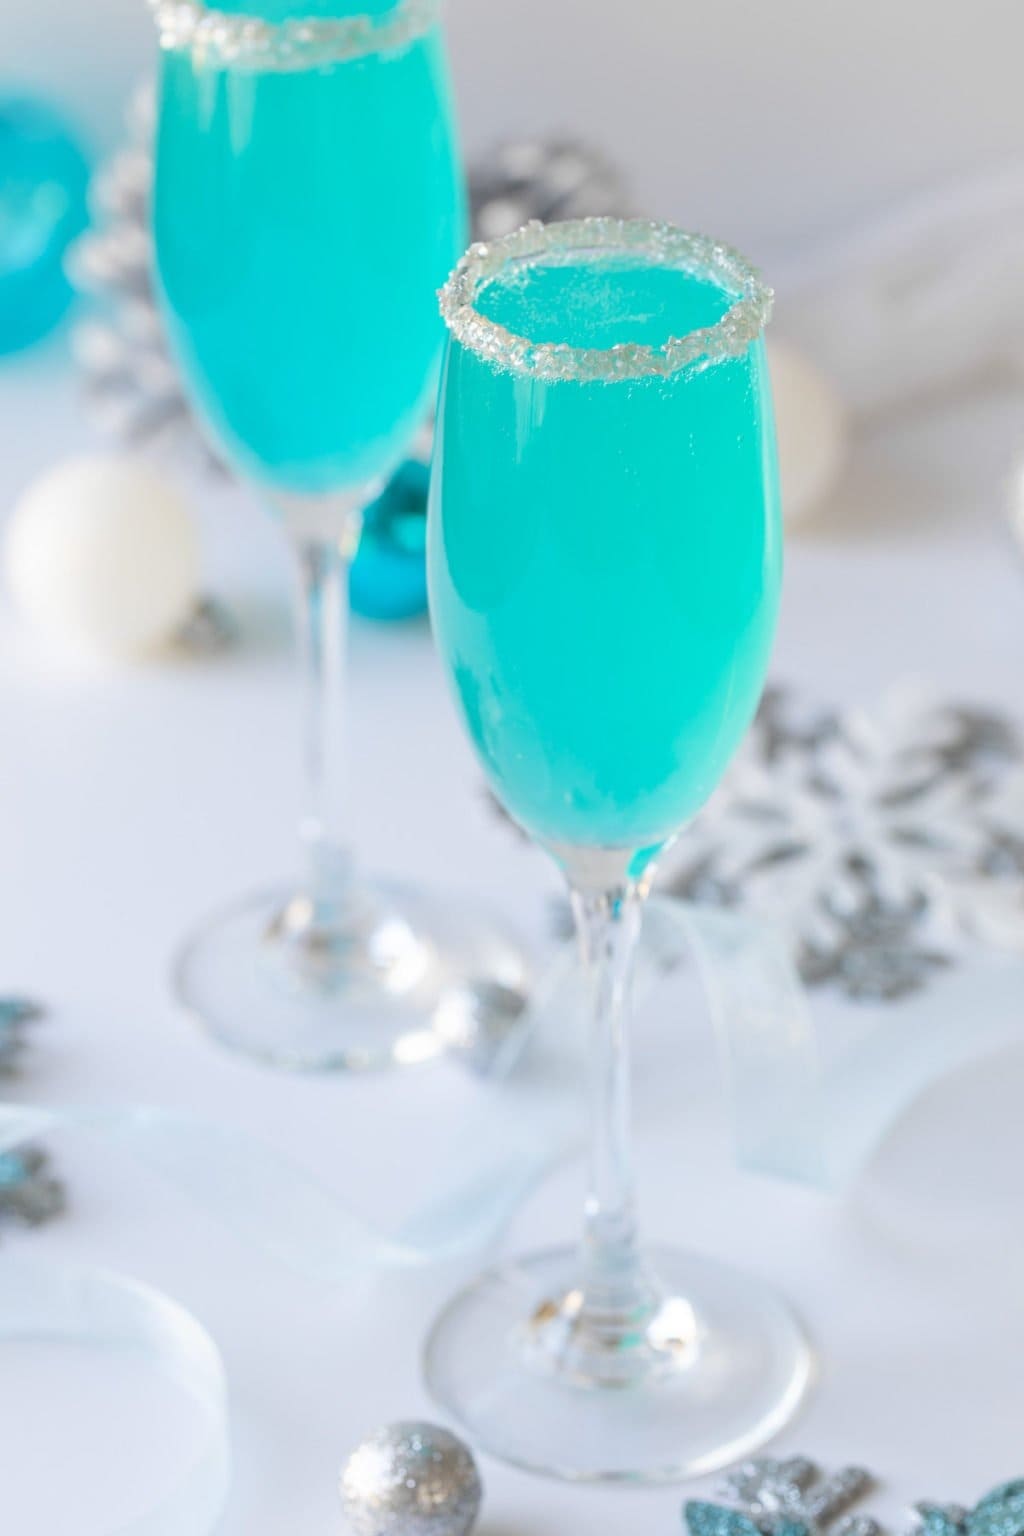 Blue cocktails served in sugar-rimmed wine glasses. 